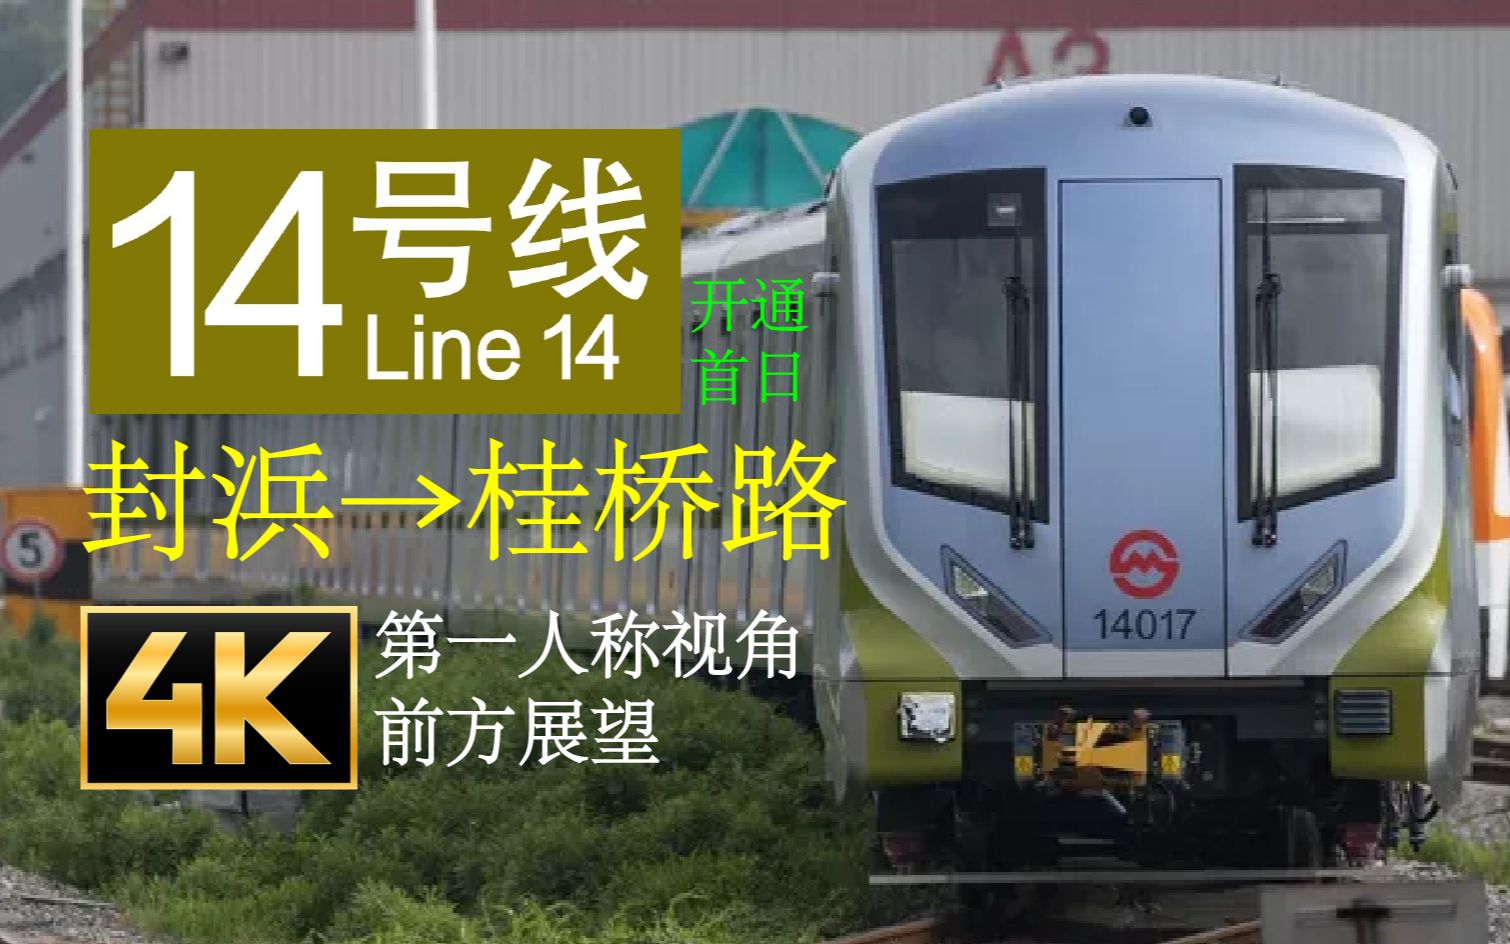 上海地铁14号线 封浜→桂桥路开通首日 pov (8倍速)